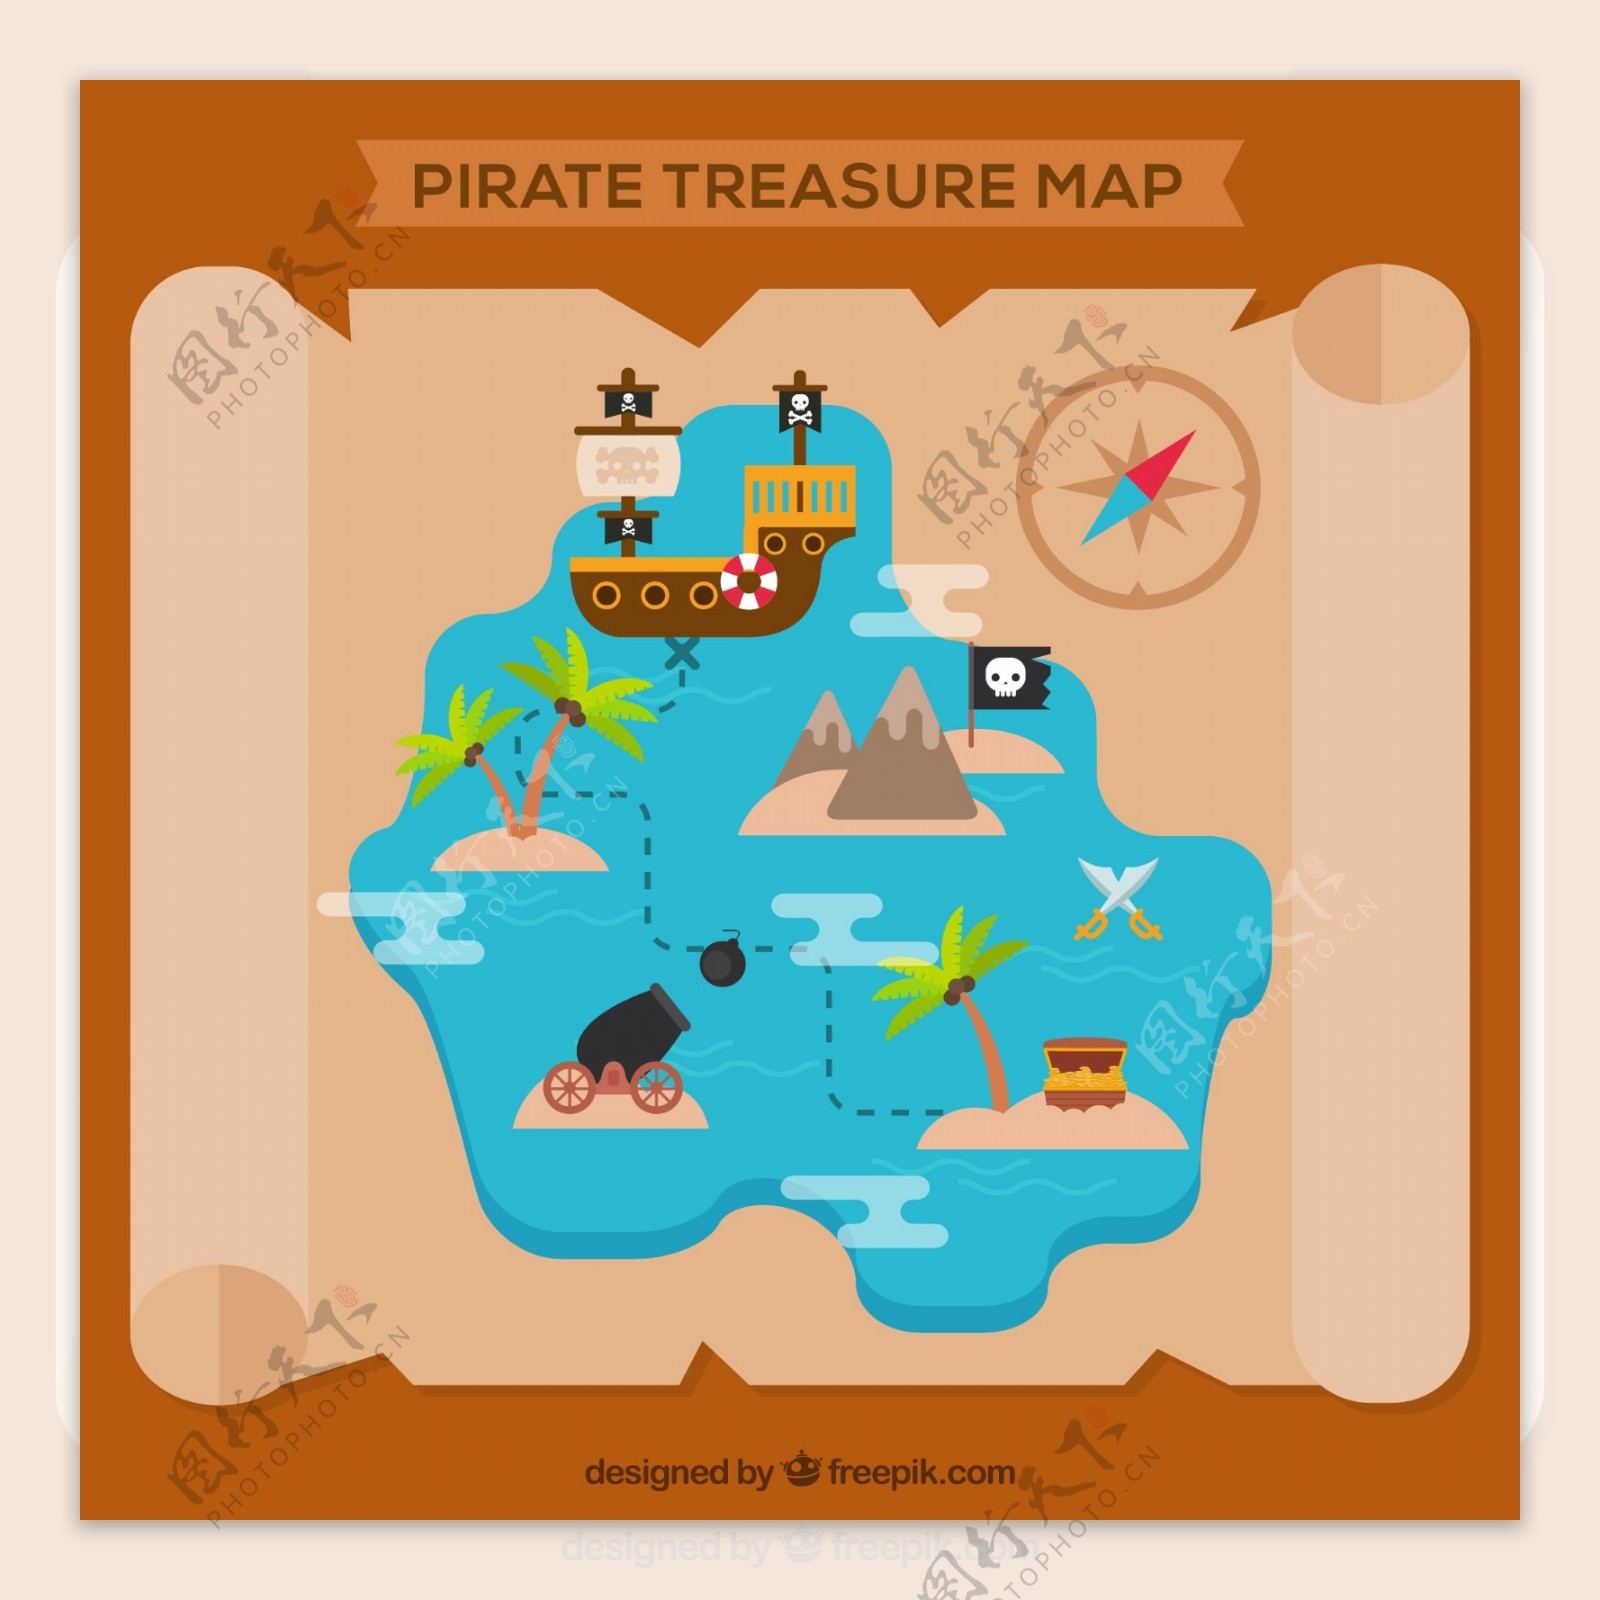 羊皮纸海盗宝藏地图